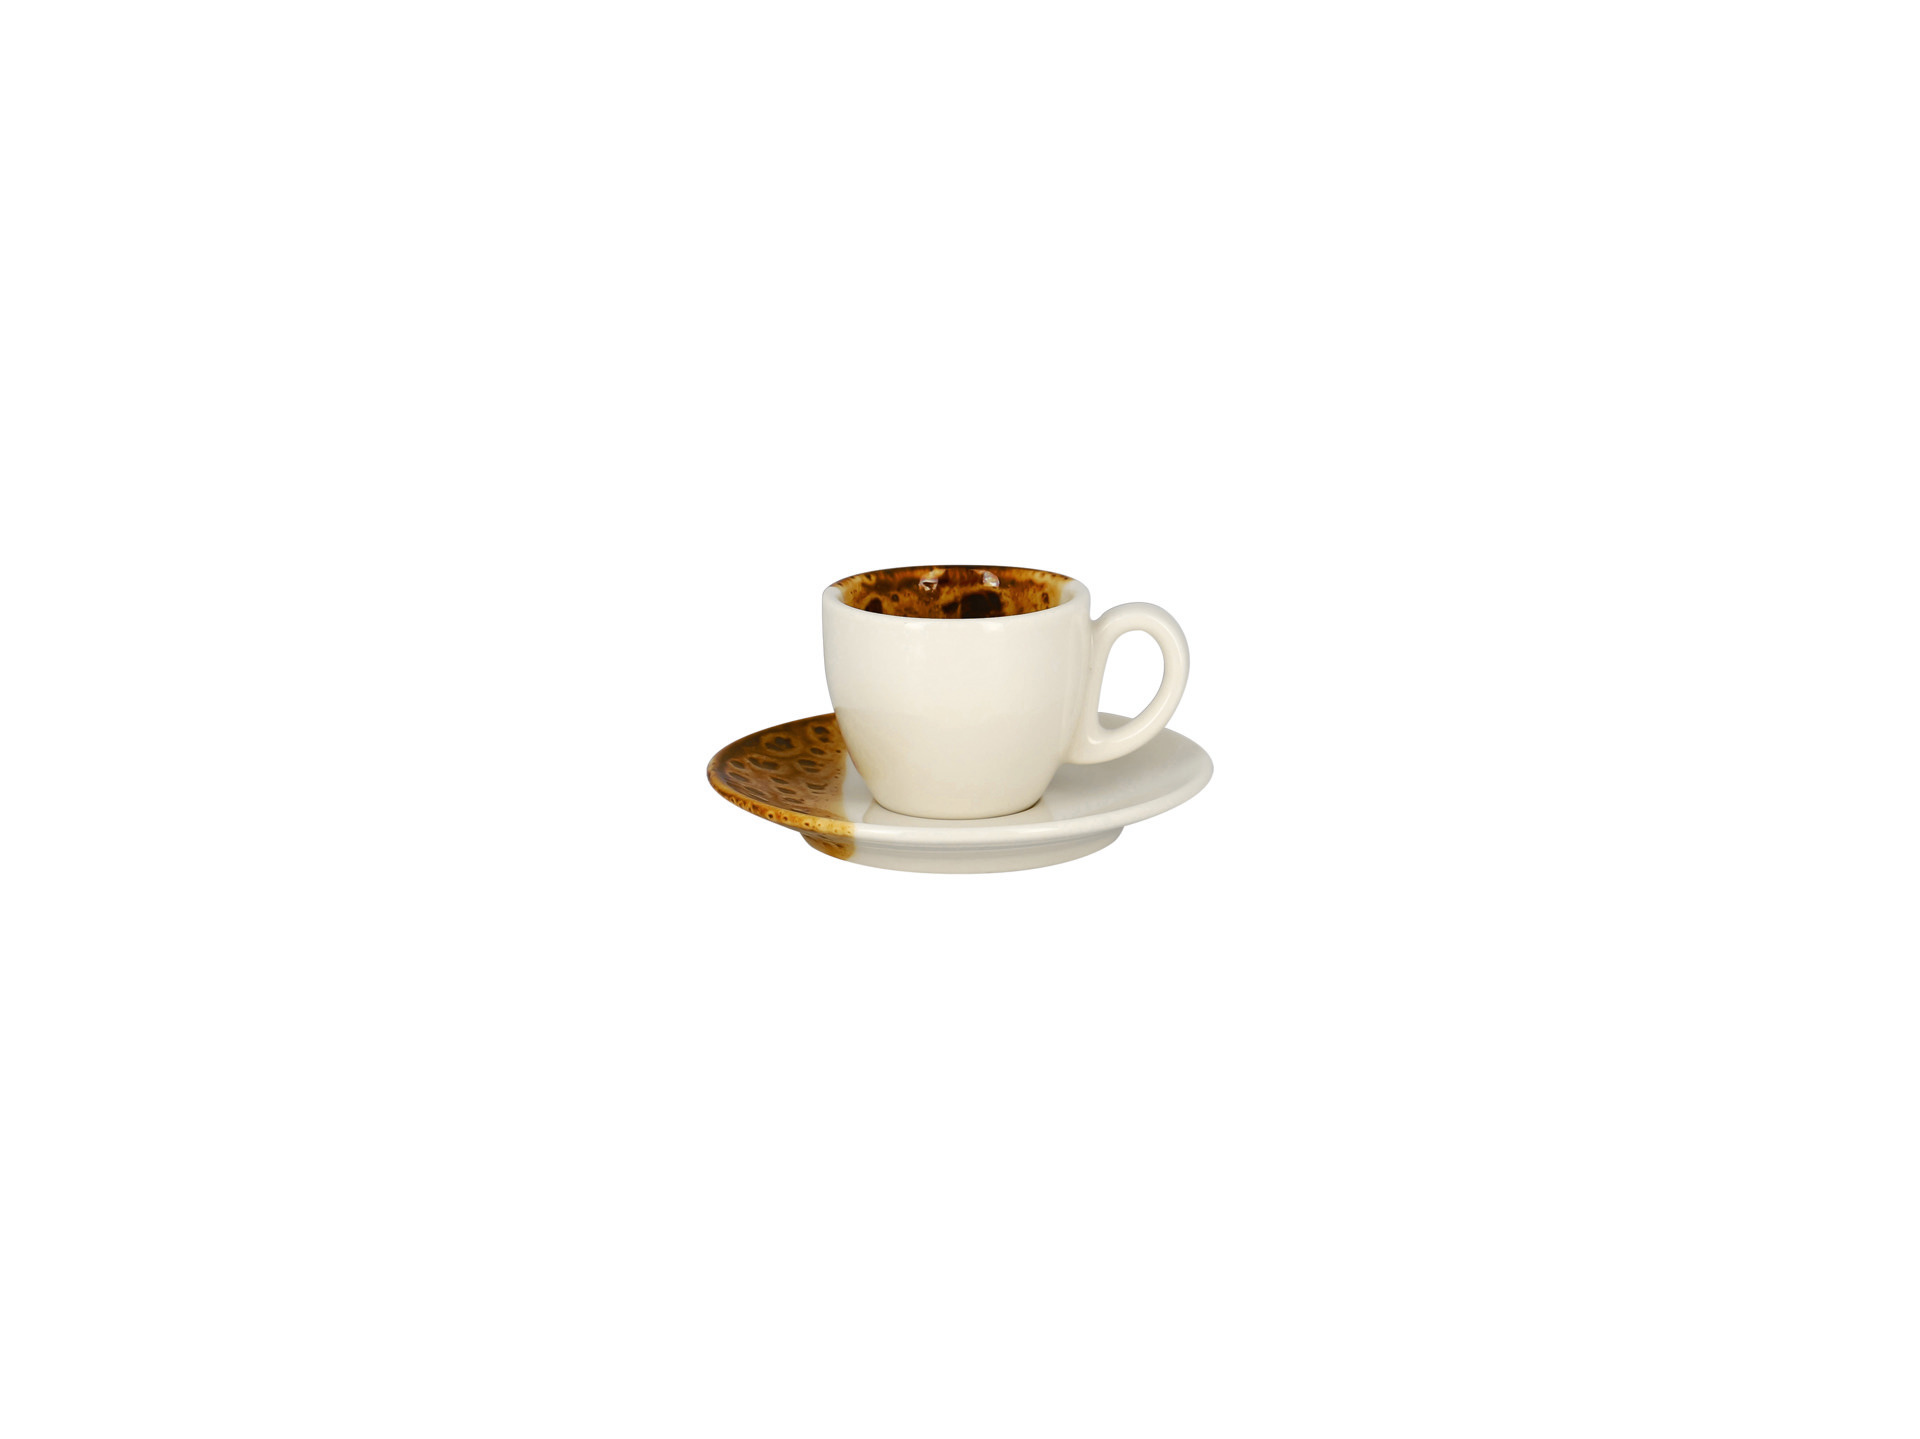 Bei einem Espresso wird heißes Wasser mit hohem Druck durch fein gemahlenes Kaffeepulver gepresst, sodass ein konzentrierter Kaffee mit einer dichten, leicht braunen Haube entsteht. Espressotassen ähneln herkömmlichen Kaffeetassen in der Form. Im Gegensatz zu diesen besitzen sie jedoch ein Fassungsvolumen von 50-70 ml. Damit die Crema des Espressos schön samtig wird, sollte die Espressotasse länglich geformt sein und am Tassenrand einen möglichst kleinen Durchmesser haben. Die Tasse hat optimalerweise eine relativ dicke Wand, denn dadurch hält sich die Wärme besser. Um die Wärme noch länger zu erhalten, solltest Du die Espressotasse vorher mit heißem Wasser, Wasserdampf oder in der Mikrowelle vorwärmen. Hierbei ist zu beachten, dass nicht jede Espressotasse in die Mikrowelle darf, deshalb solltest Du vor Gebrauch die Pflege- und Gebrauchshinweise durchlesen.&nbsp;